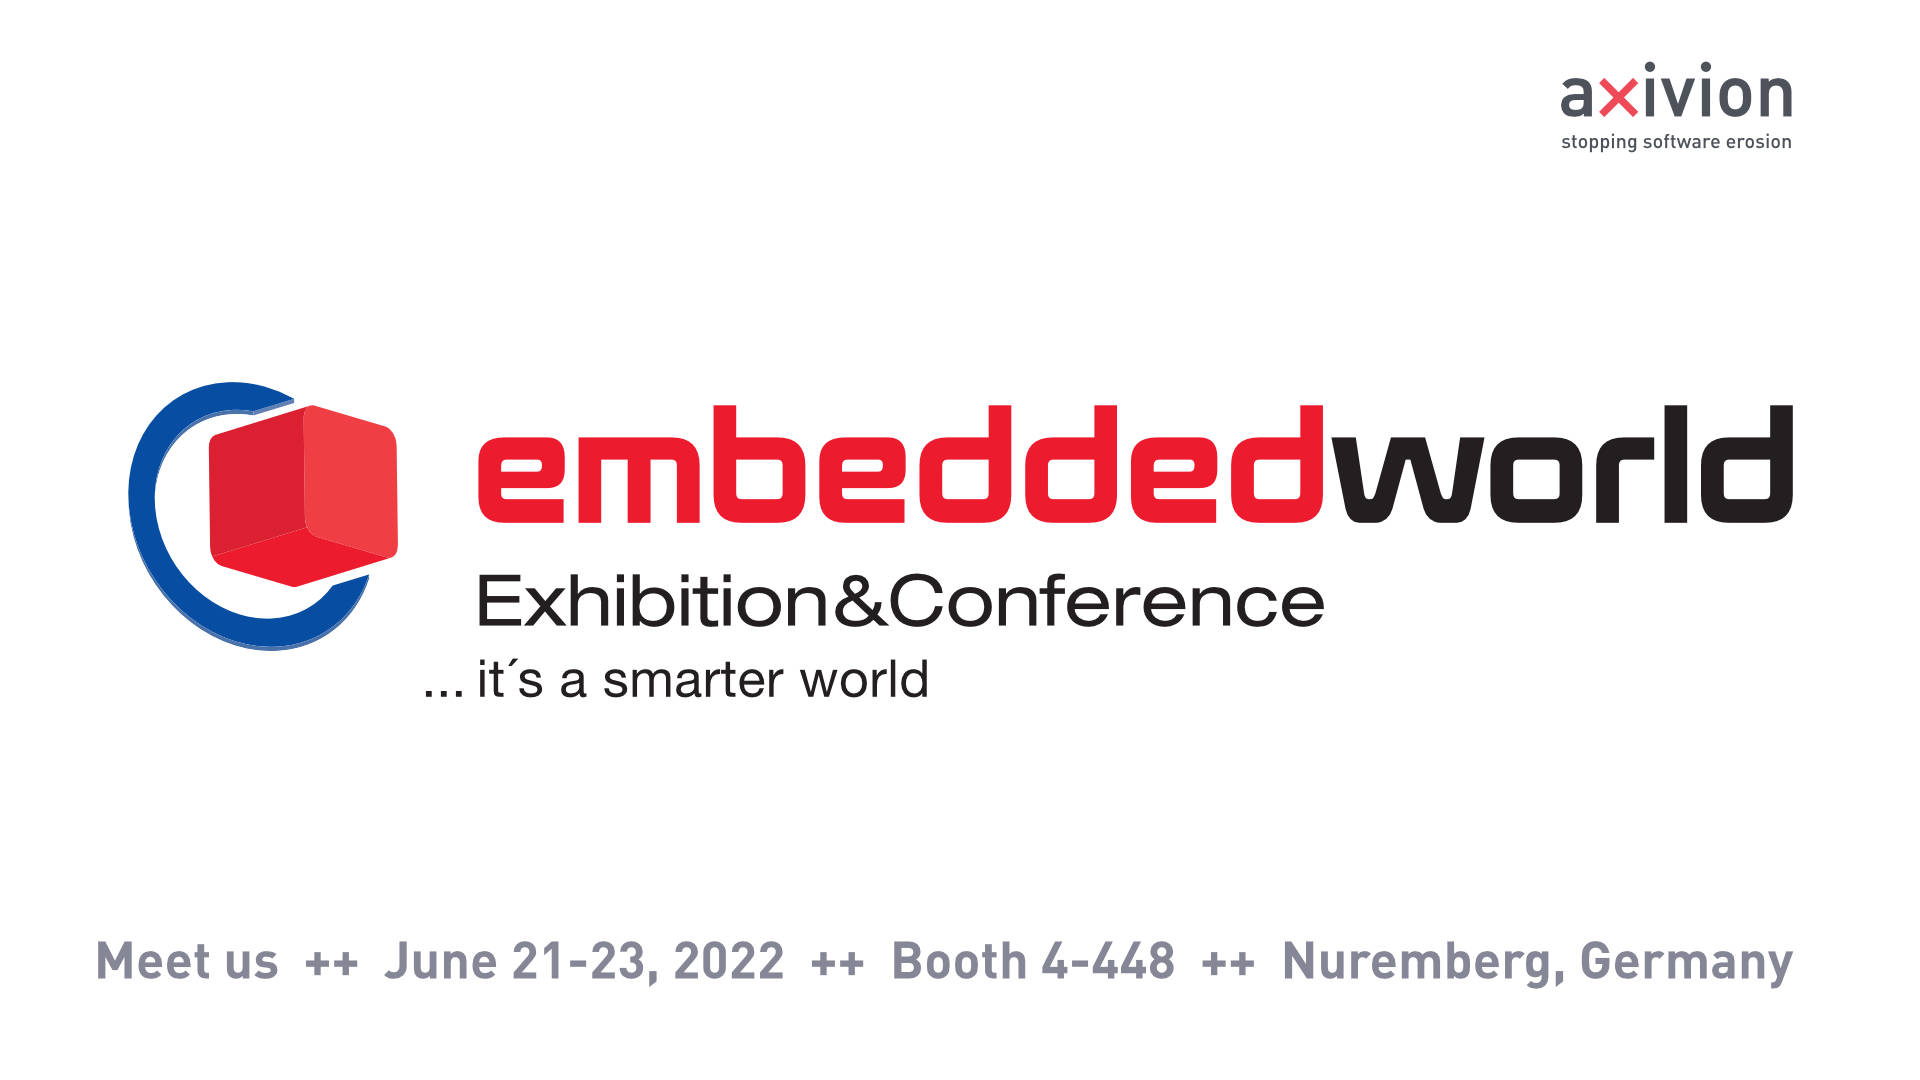 Meet Axivion at Embedded World 2022 in Nuremburg, Germany on 21-23 June, 2022